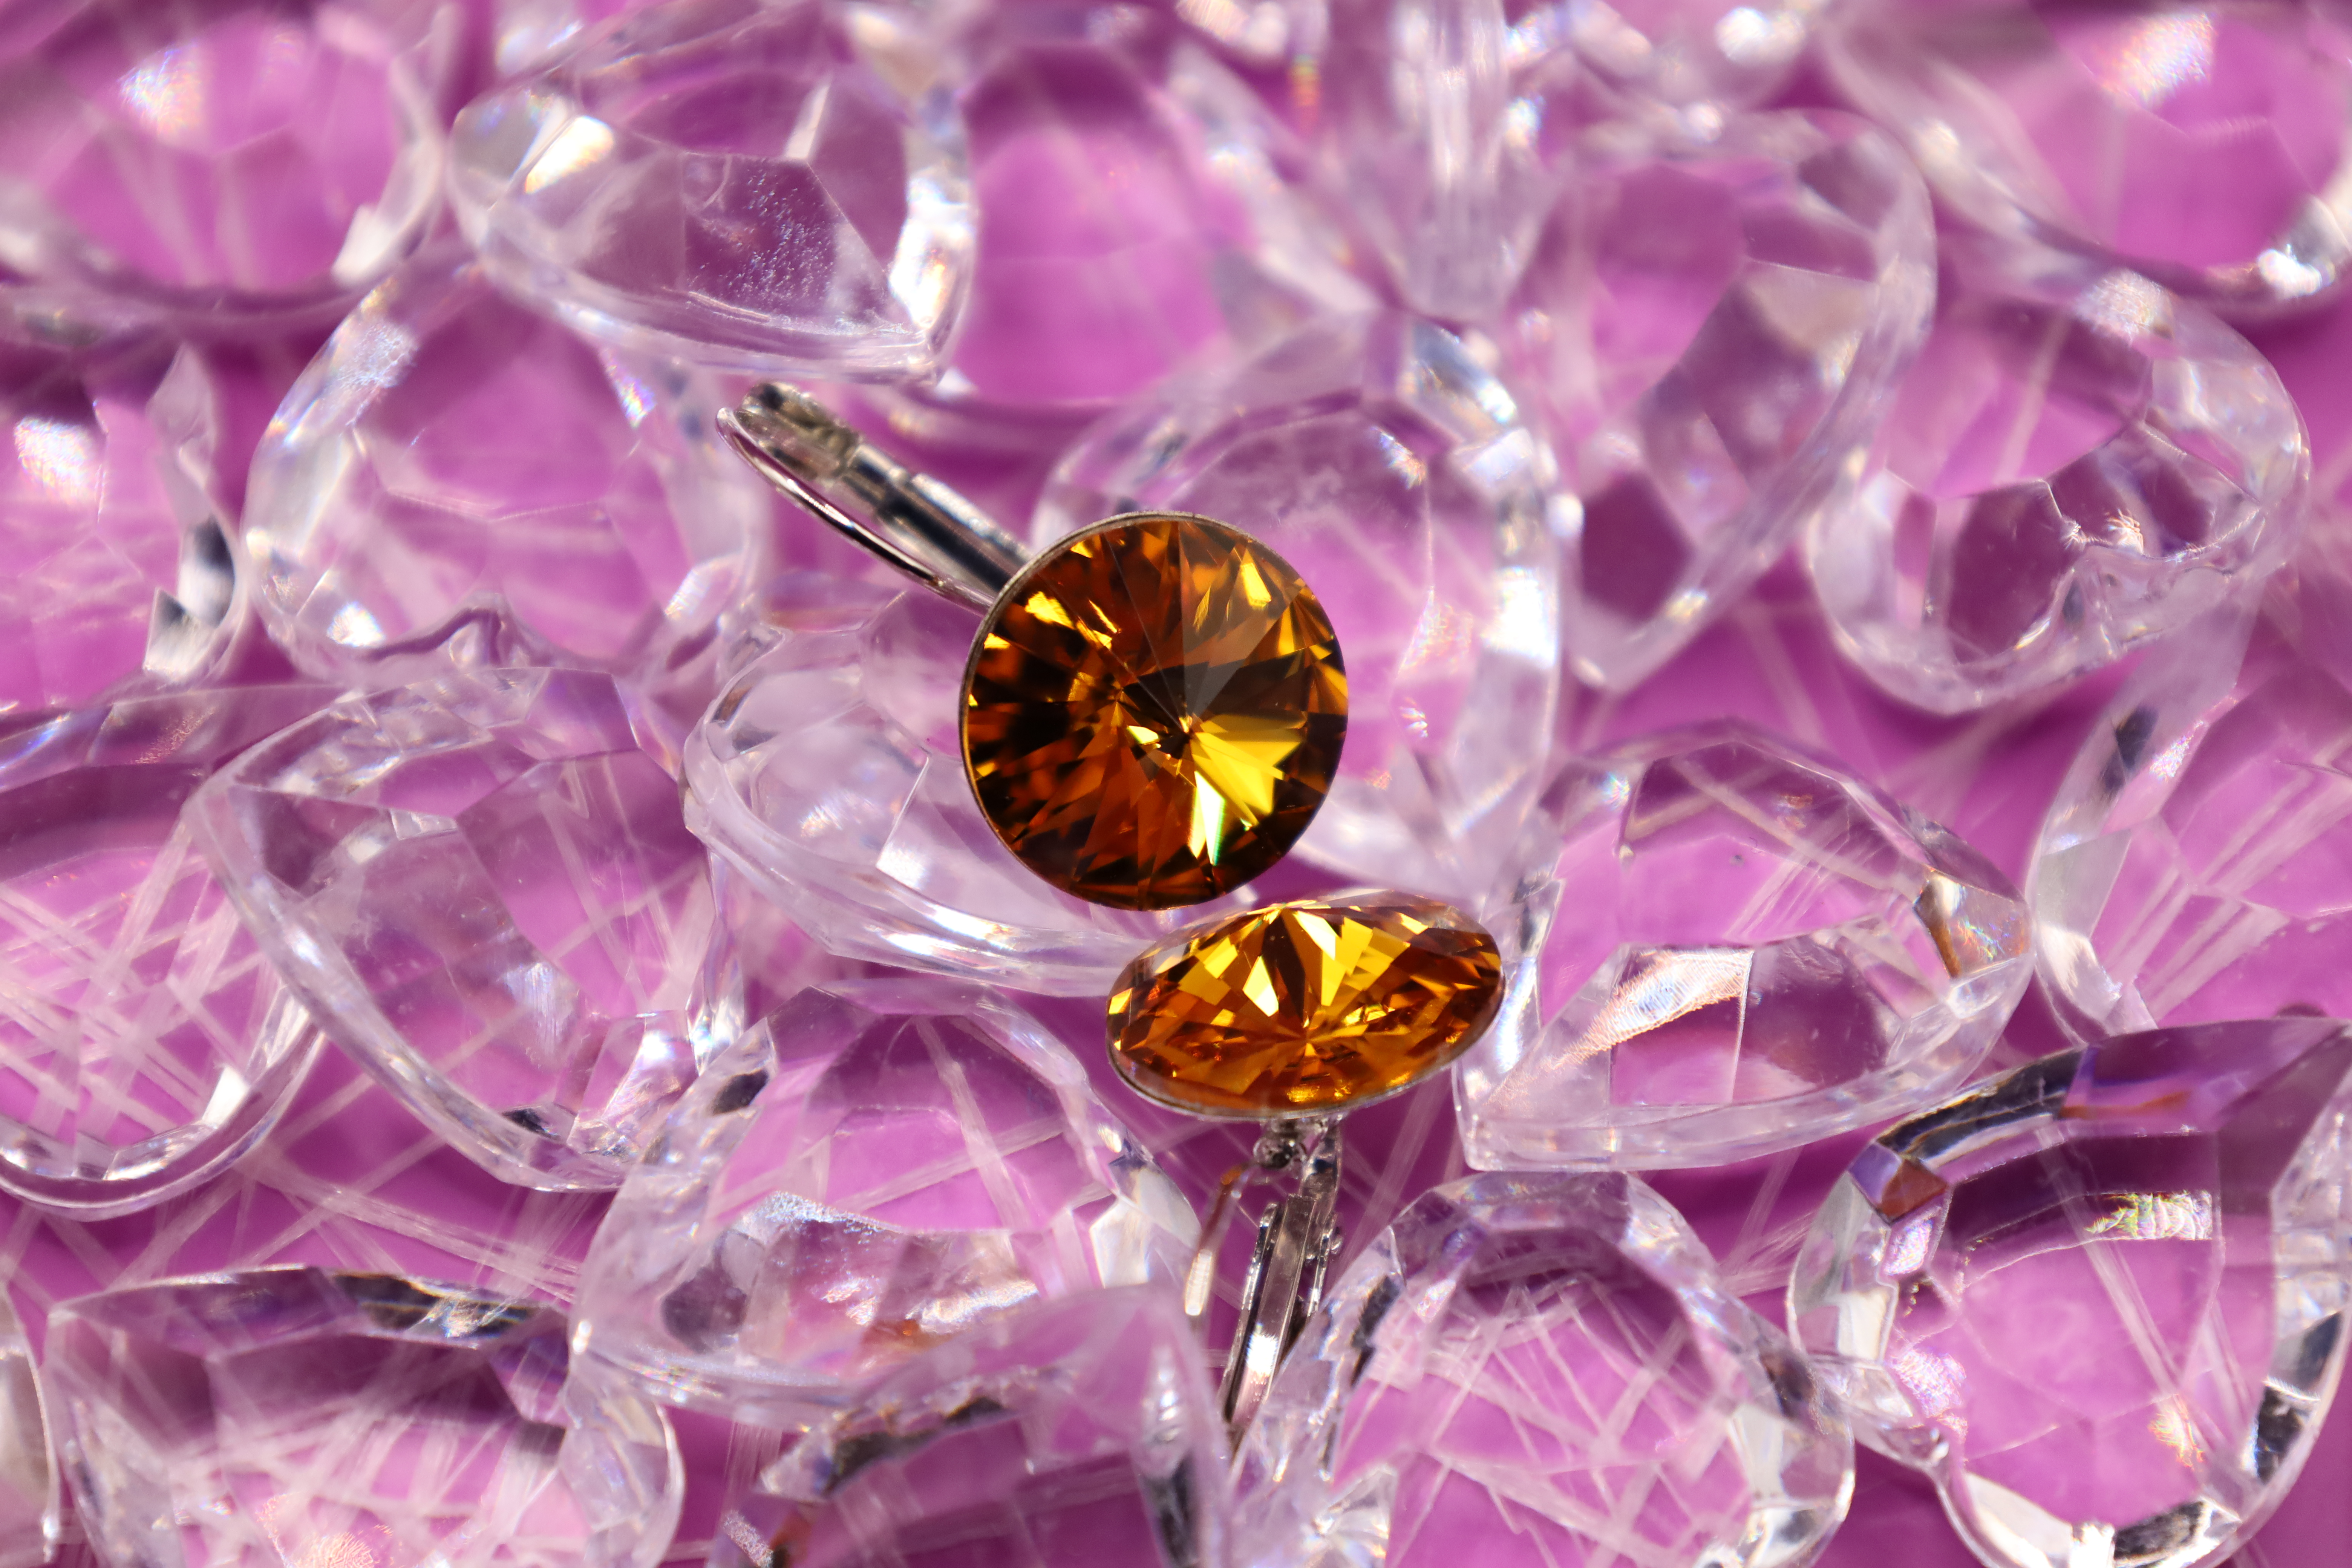 Ohrringe aus Edelstahl mit einem Swarovsky Kristall in strahlendem Goldbraun.